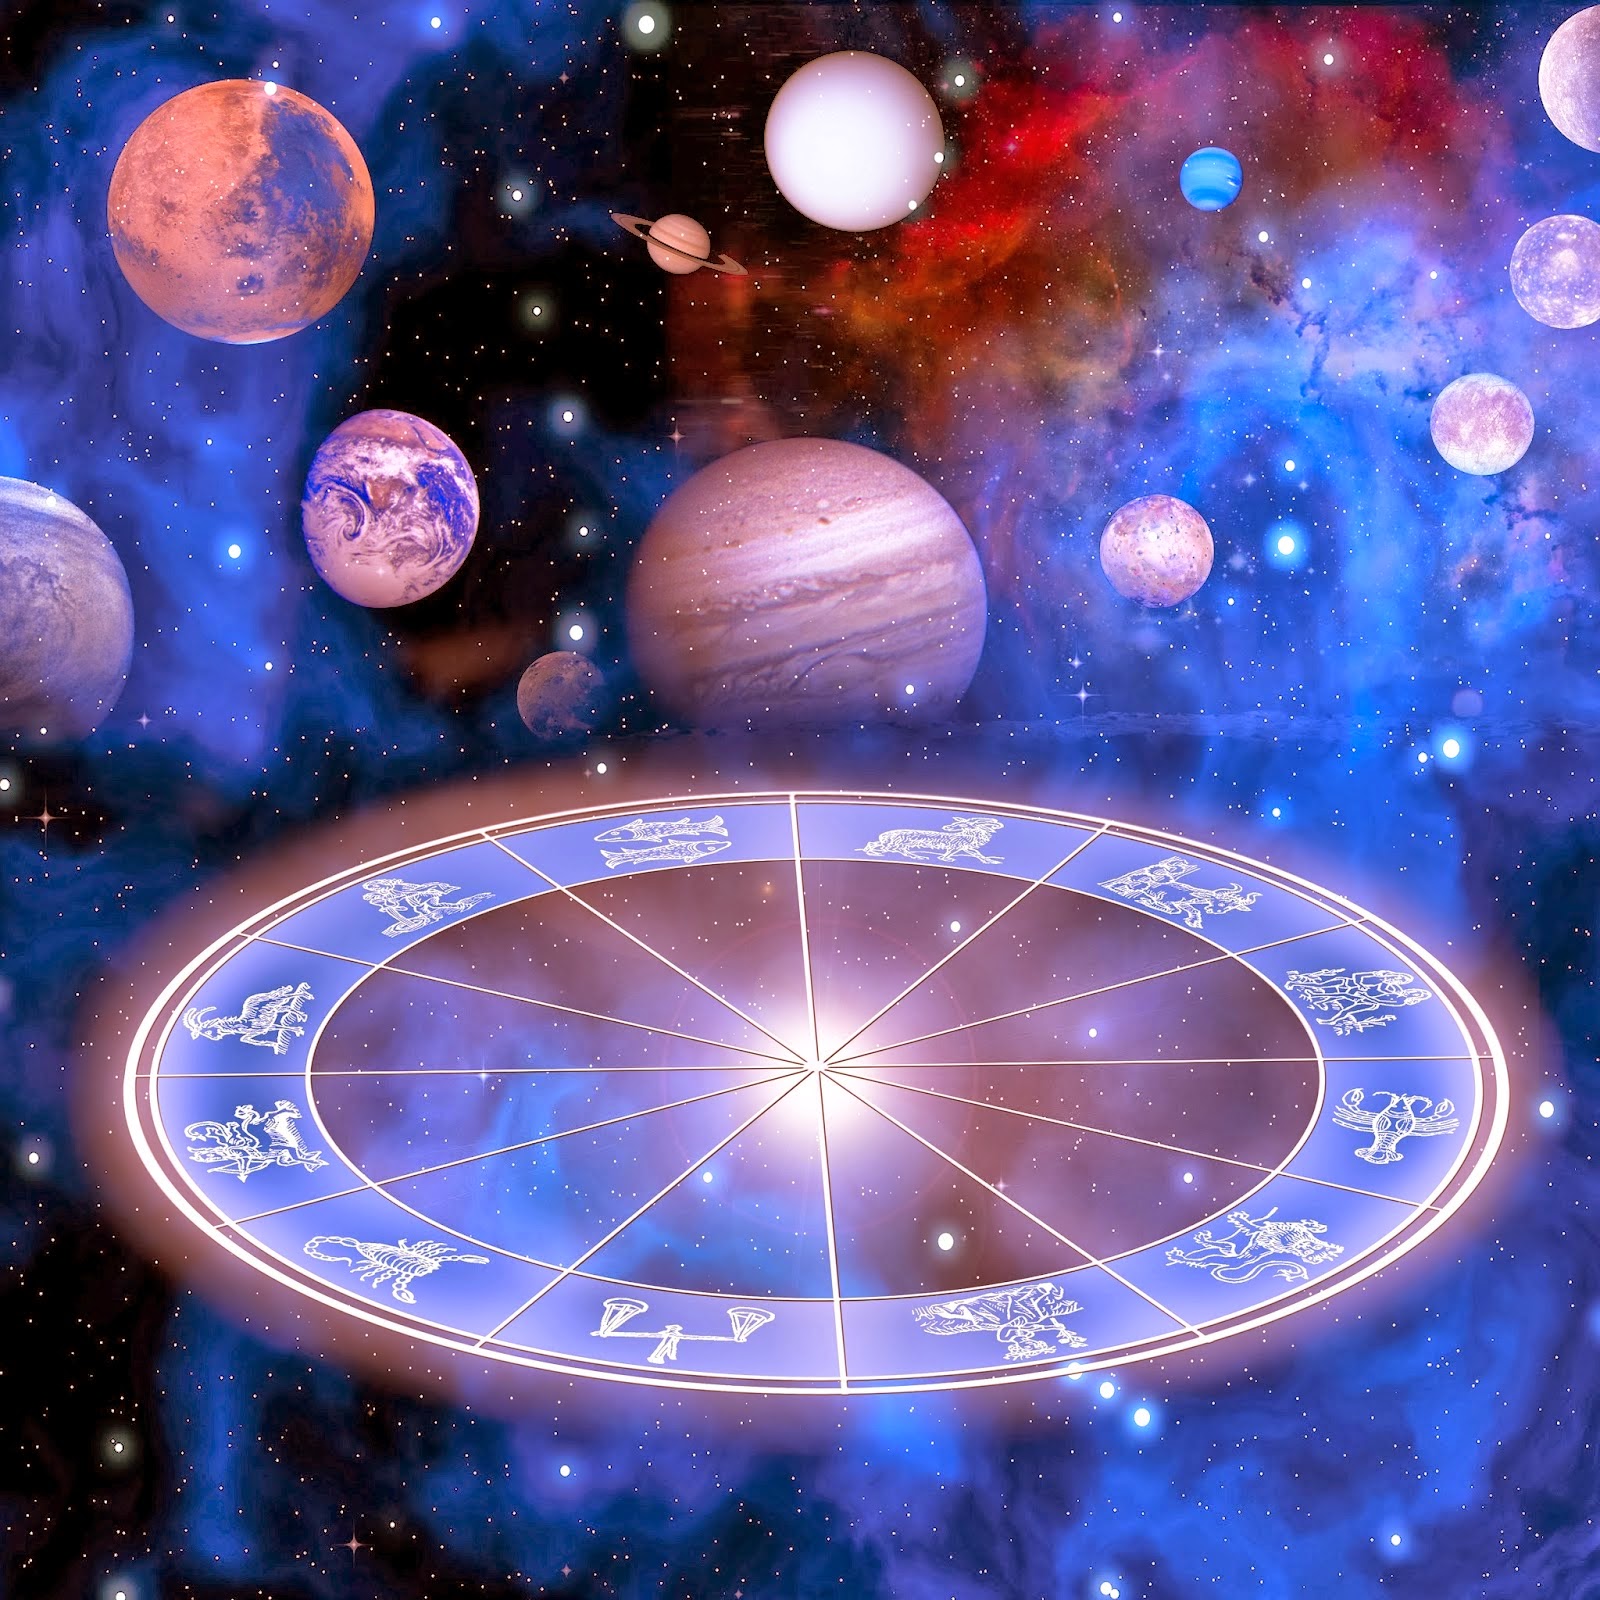 Para qué sirve la astrología?